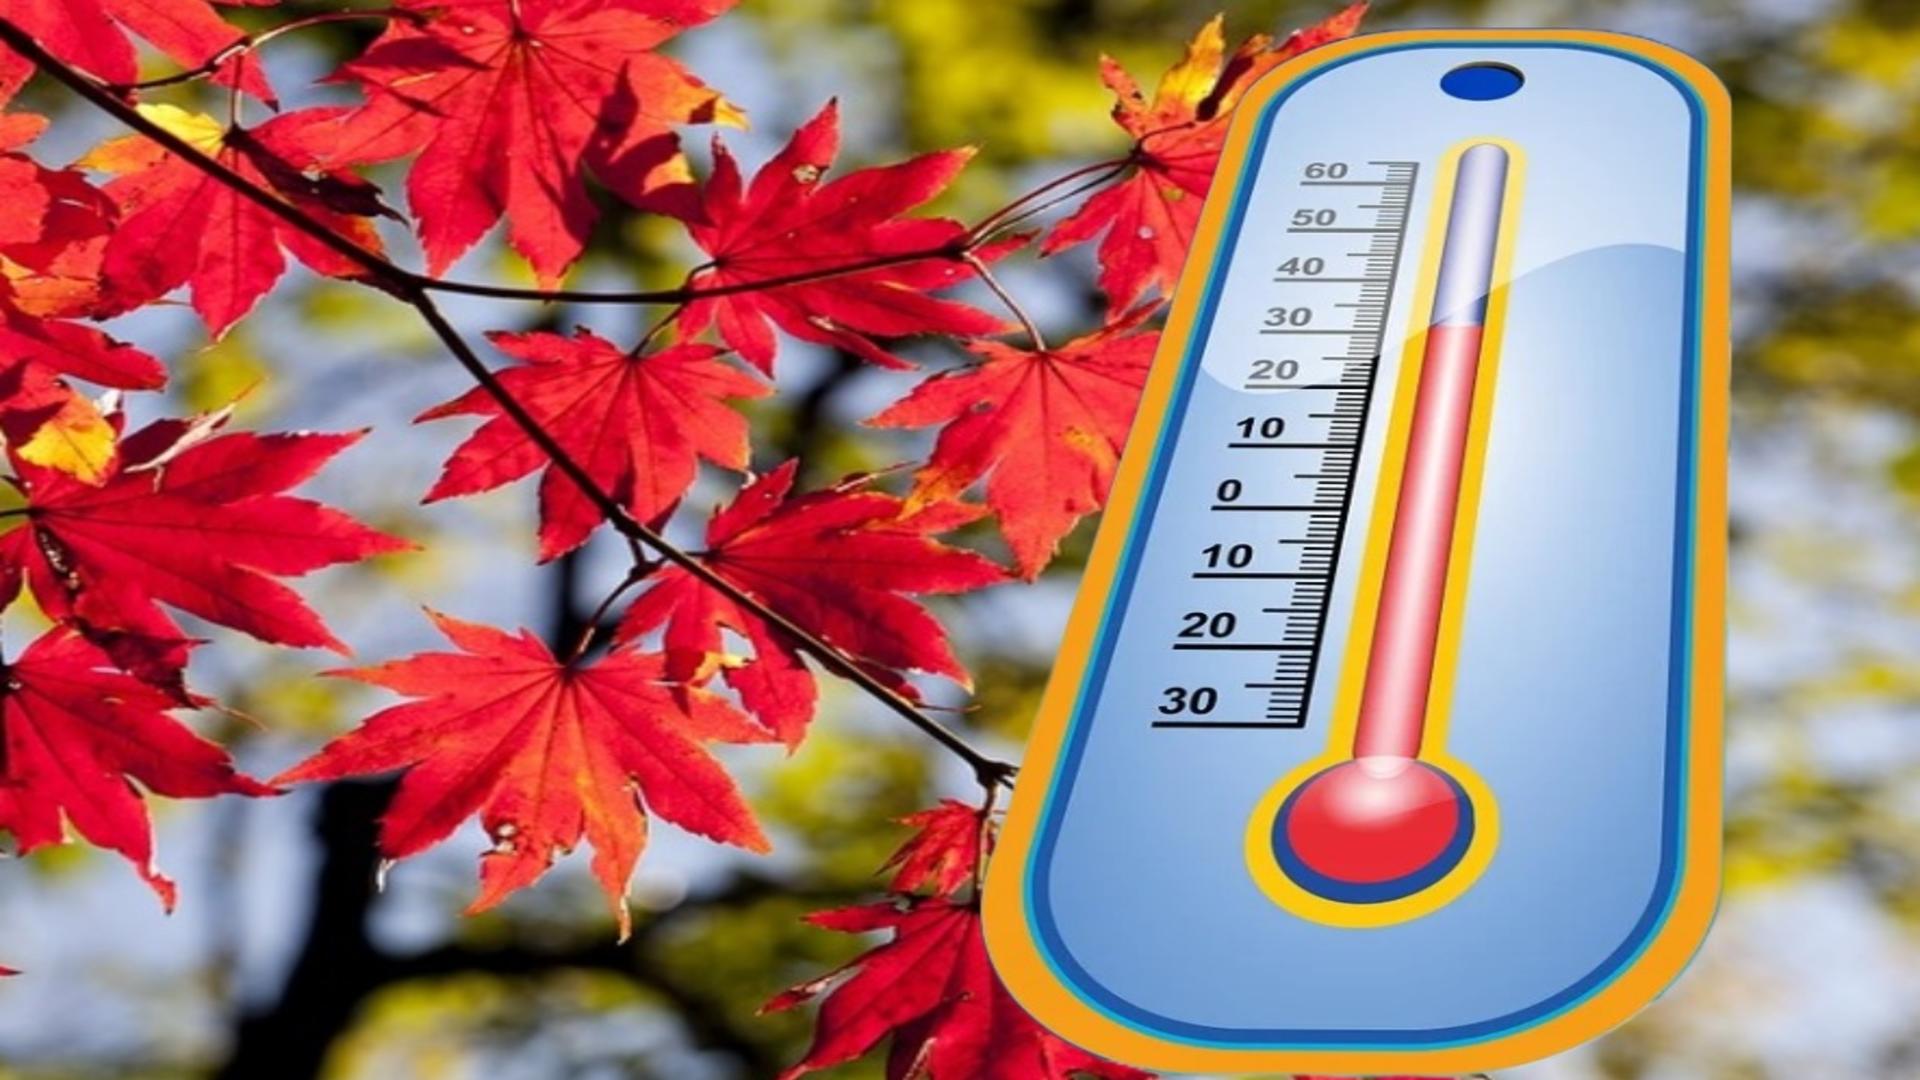 Vremea 14 octombrie. Temperaturi de vară în plină toamnă - Mercurul urcă incredibil în termometre